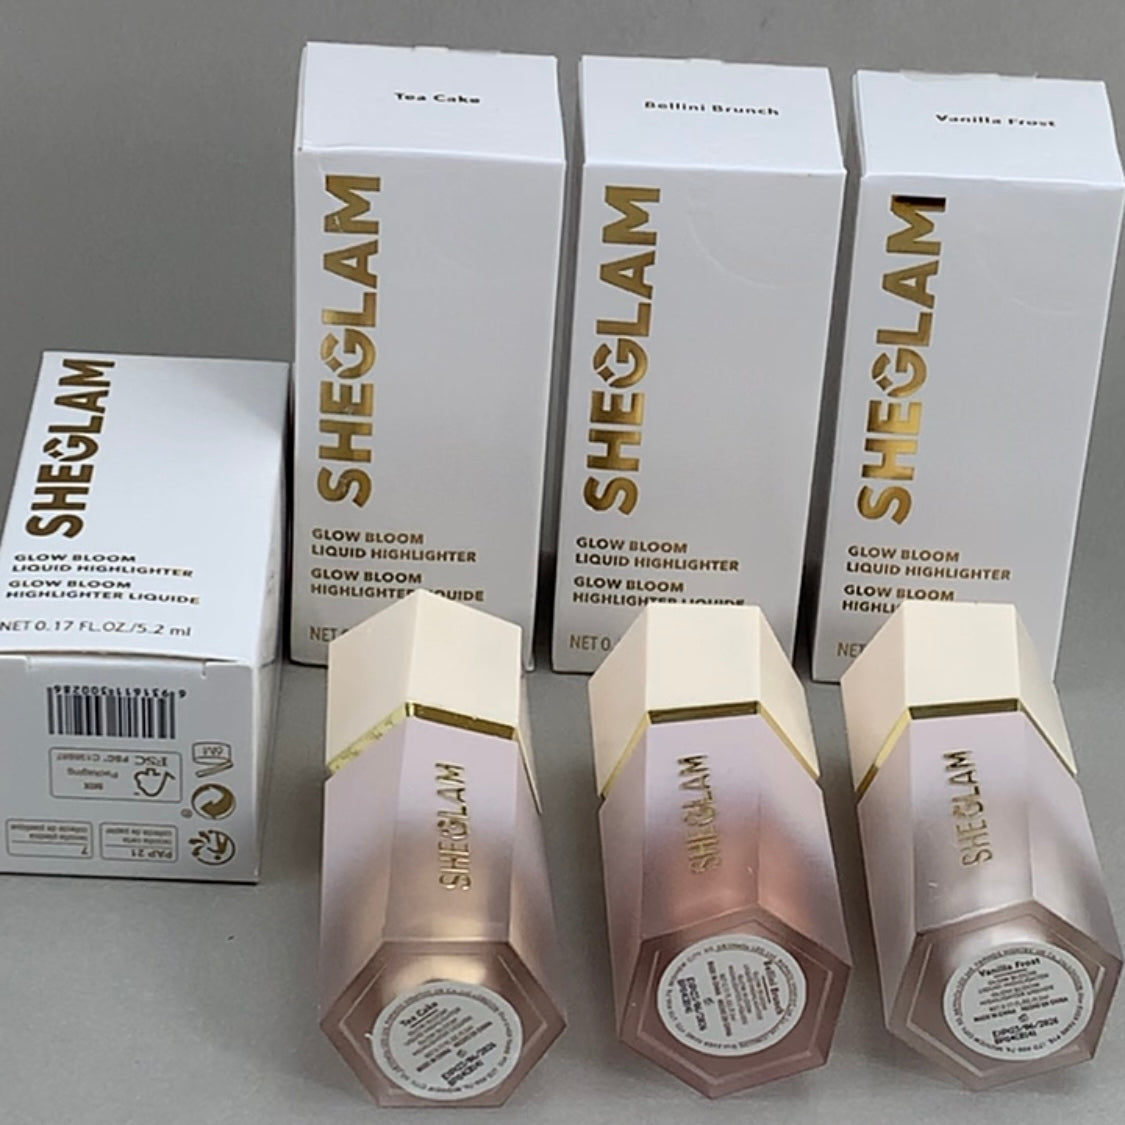 SHEGLAM Glow Bloom Liquid Highlighter Shimmer Vanilla Frost 5.2ml